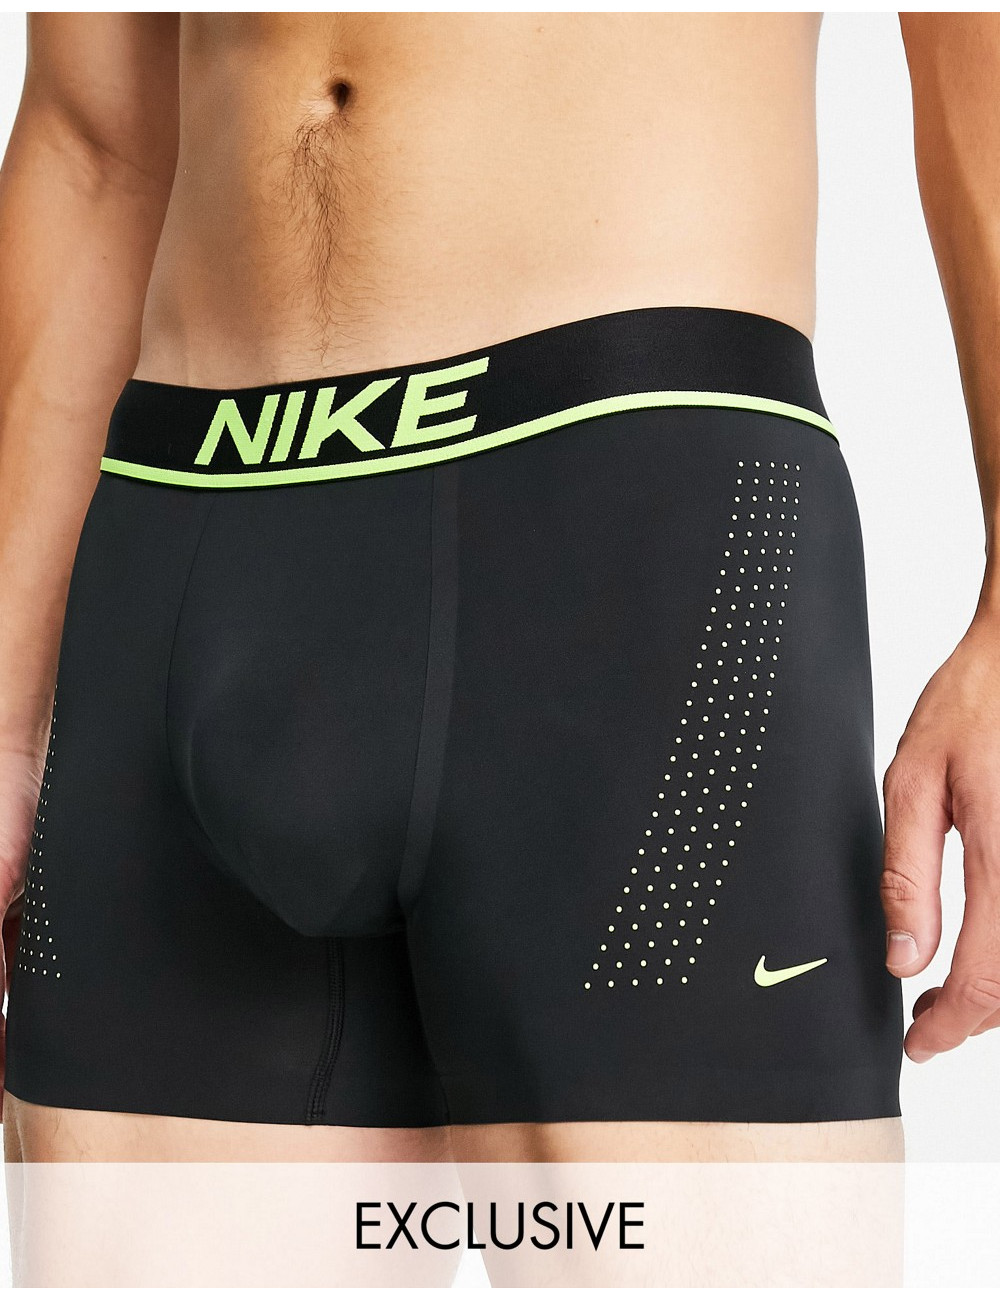 Nike Elite Micro trunks in...